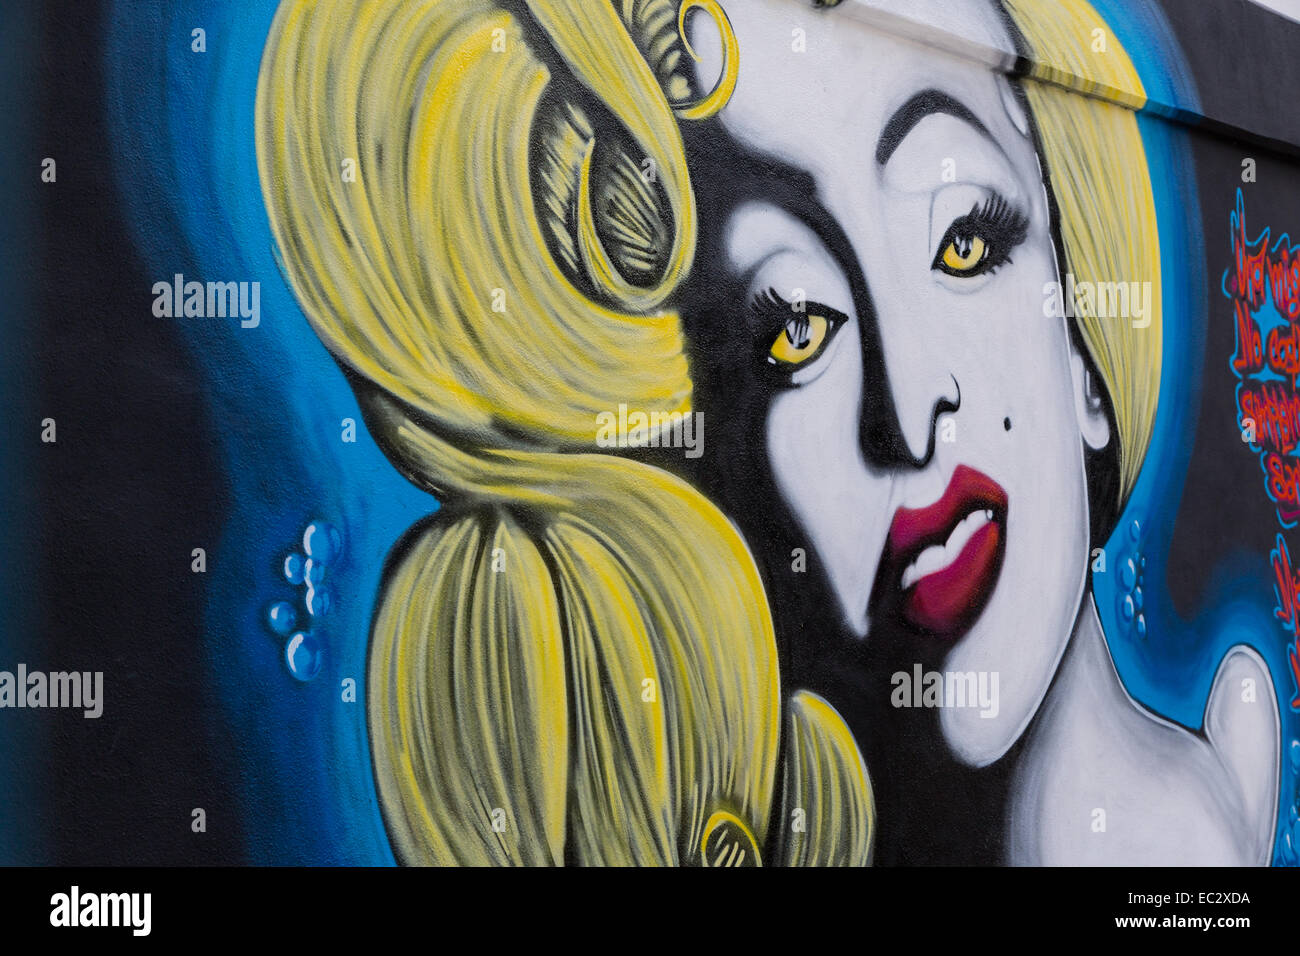 Art urbain représentant Marilyn Monroe dans la ville coloniale espagnole de Santiago de Queretaro, Mexique Banque D'Images